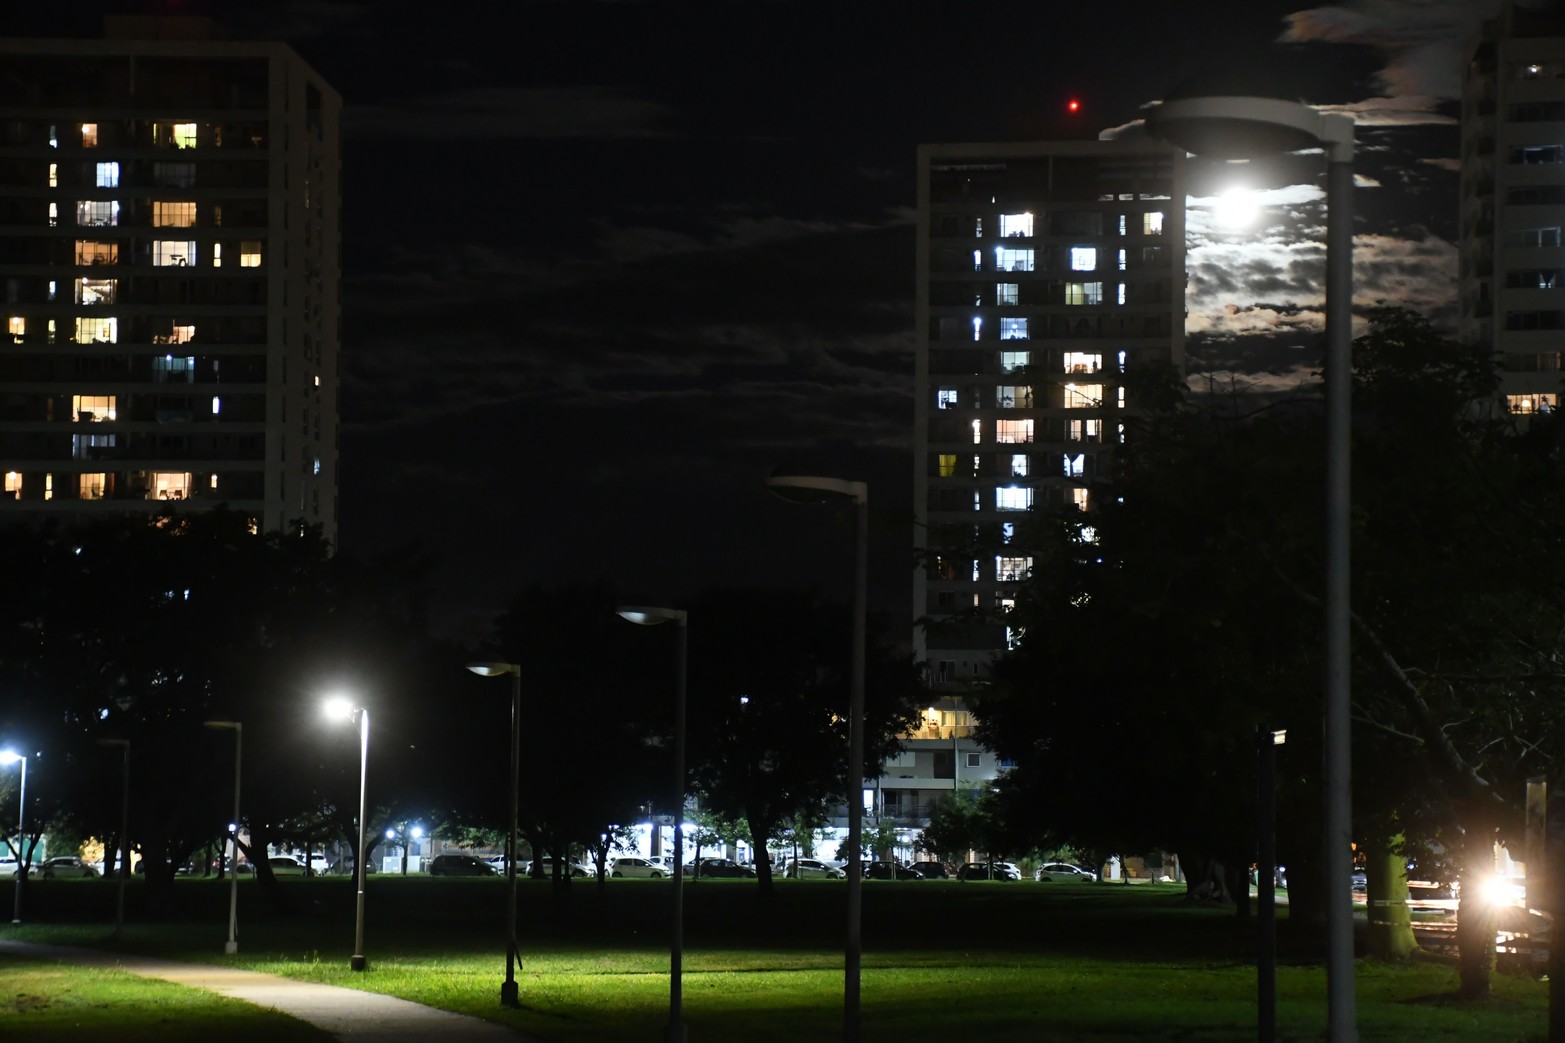 El parque Federal sigue con claros y oscuros. Transitar a la noche por la extensión del paseo público se pueden encontrar espacios con iluminación y en otros con total oscuridad.